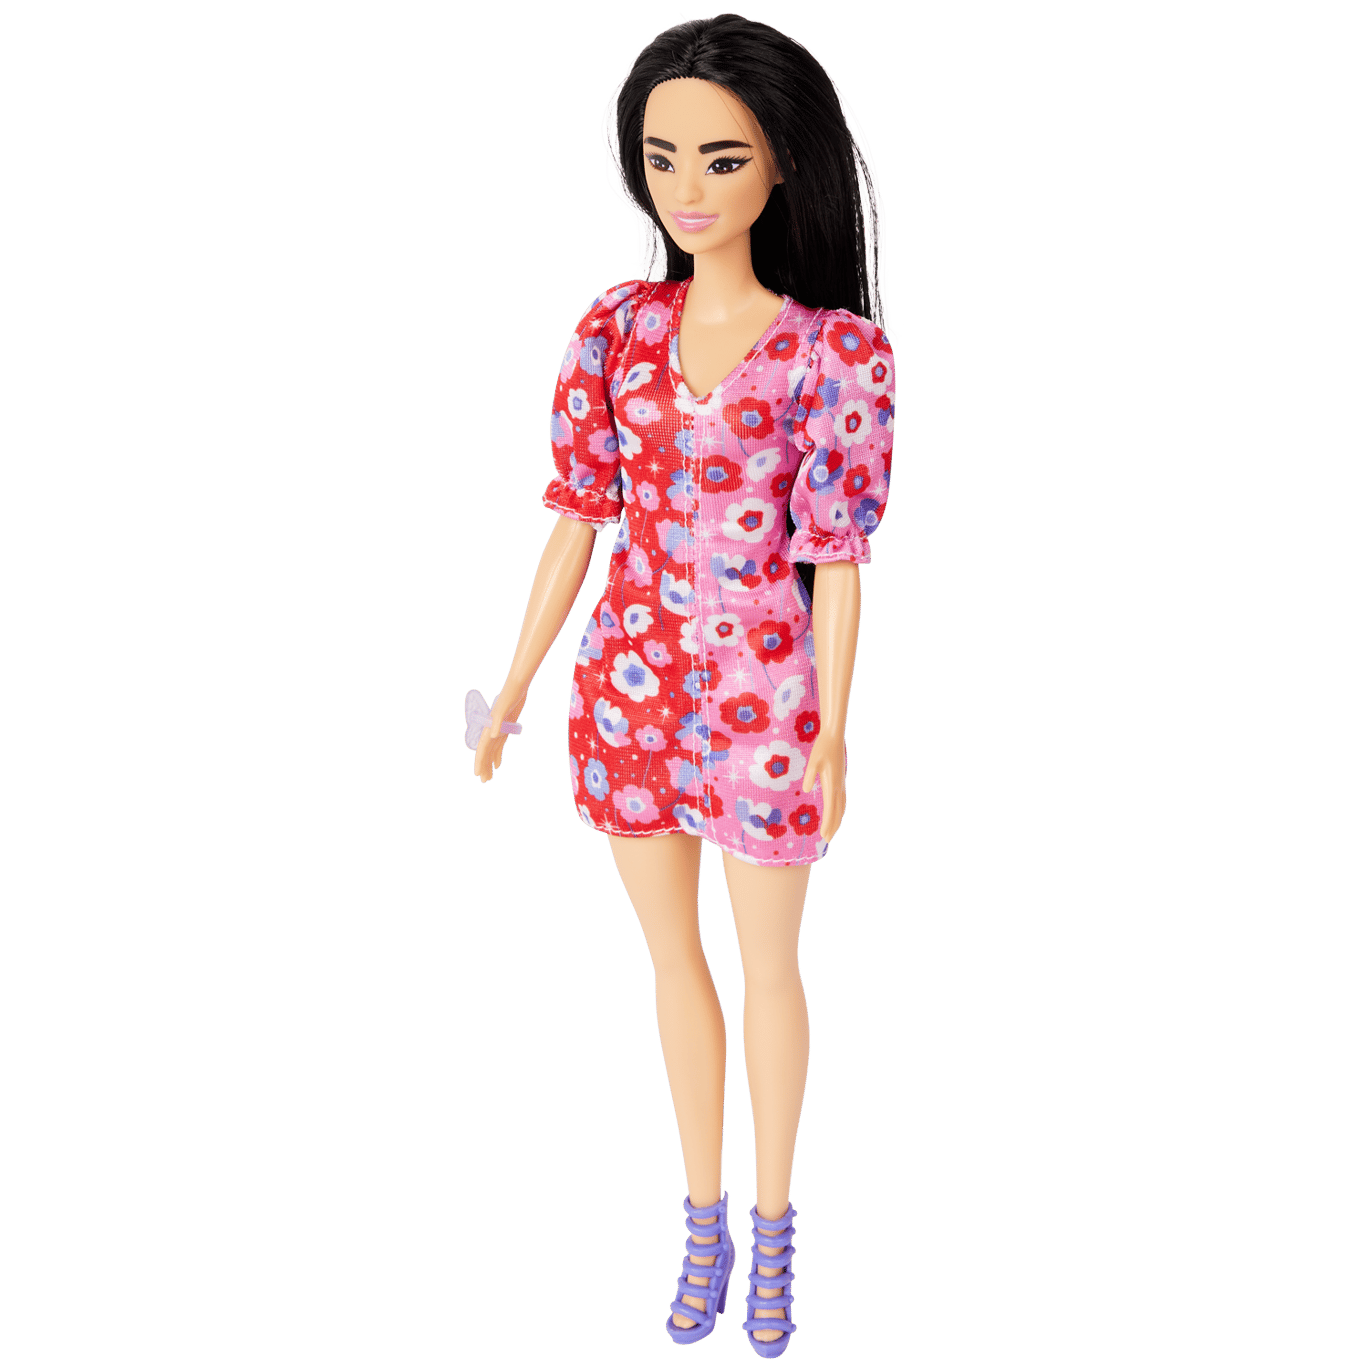 Doelwit aanval Seizoen Barbie Fashionista | Action.com